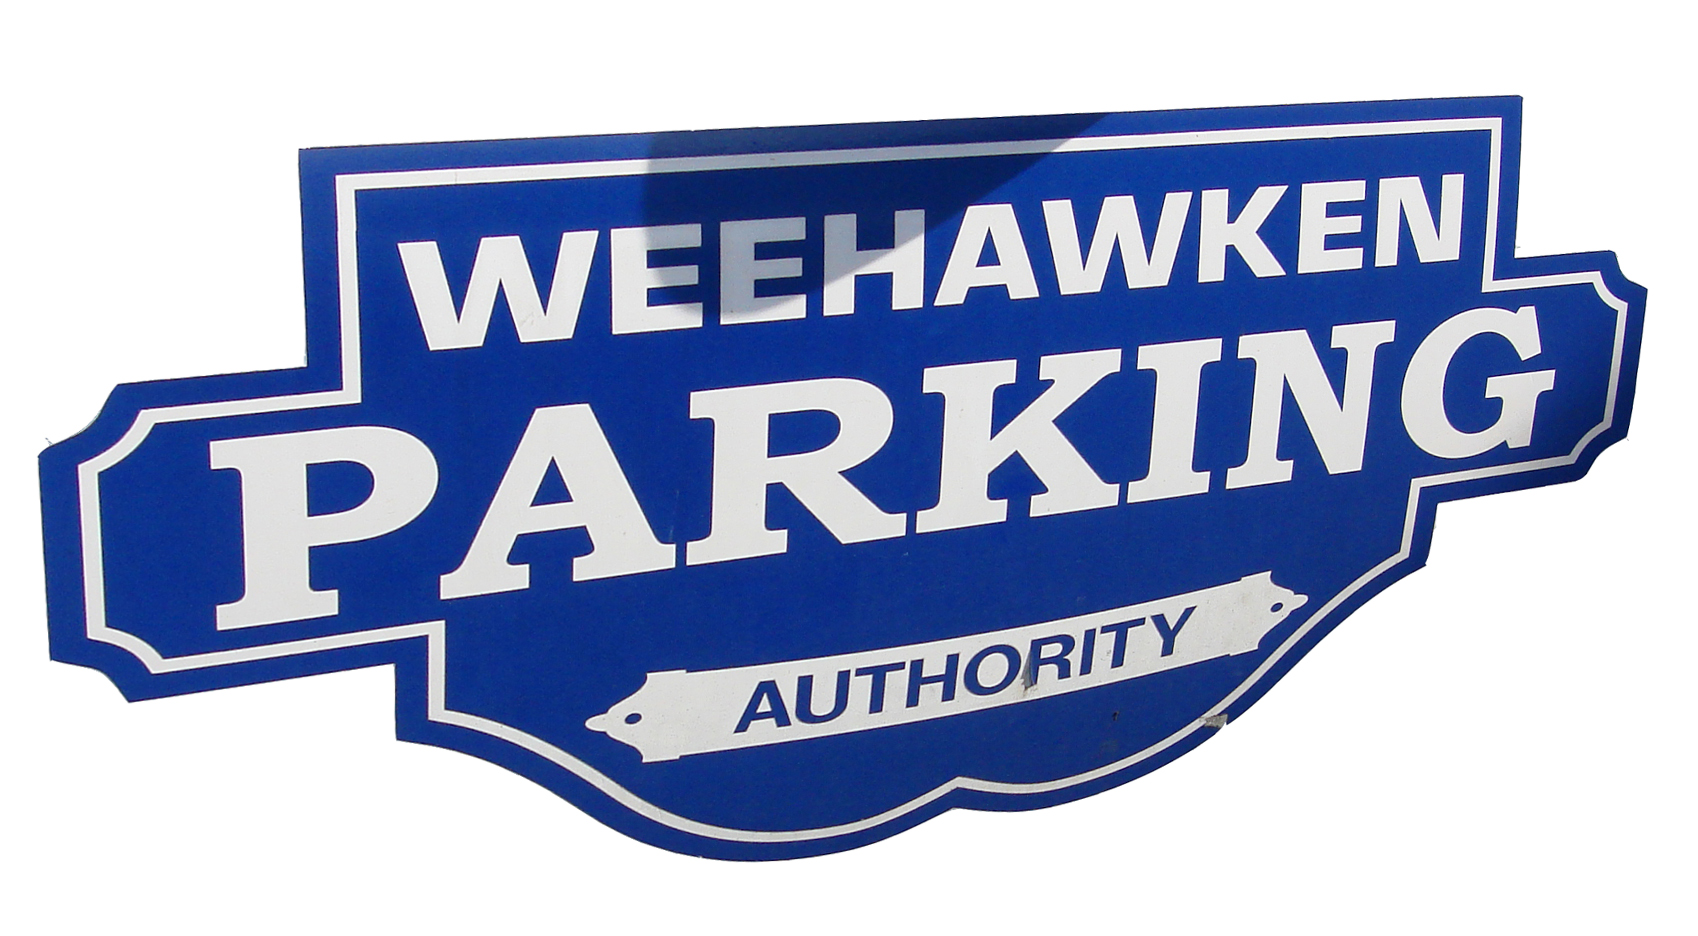 Parking_authority_logo